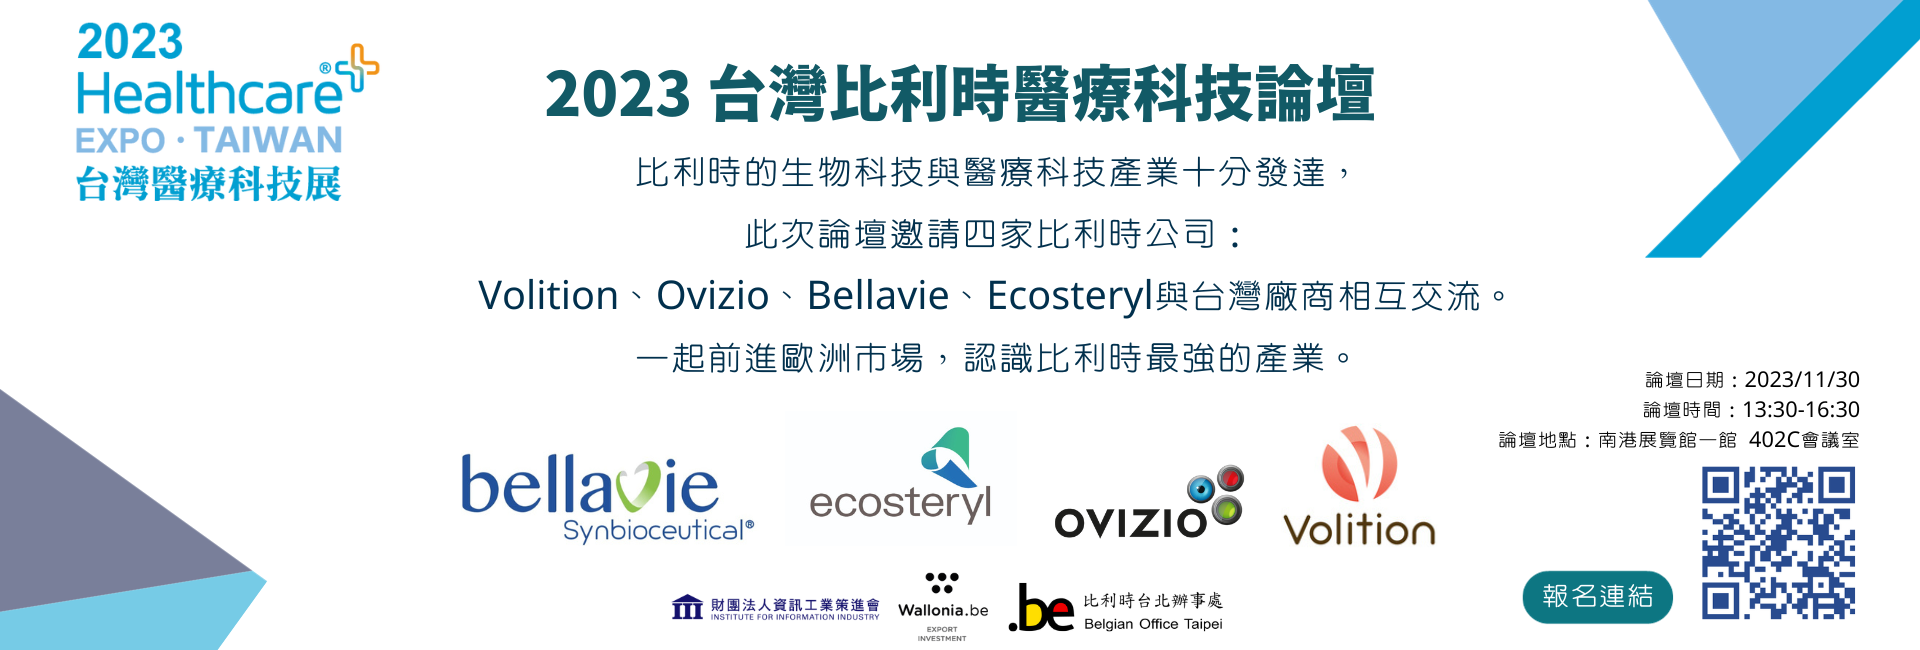 2023台灣醫療科技展+台灣比利時創新醫療科技論壇